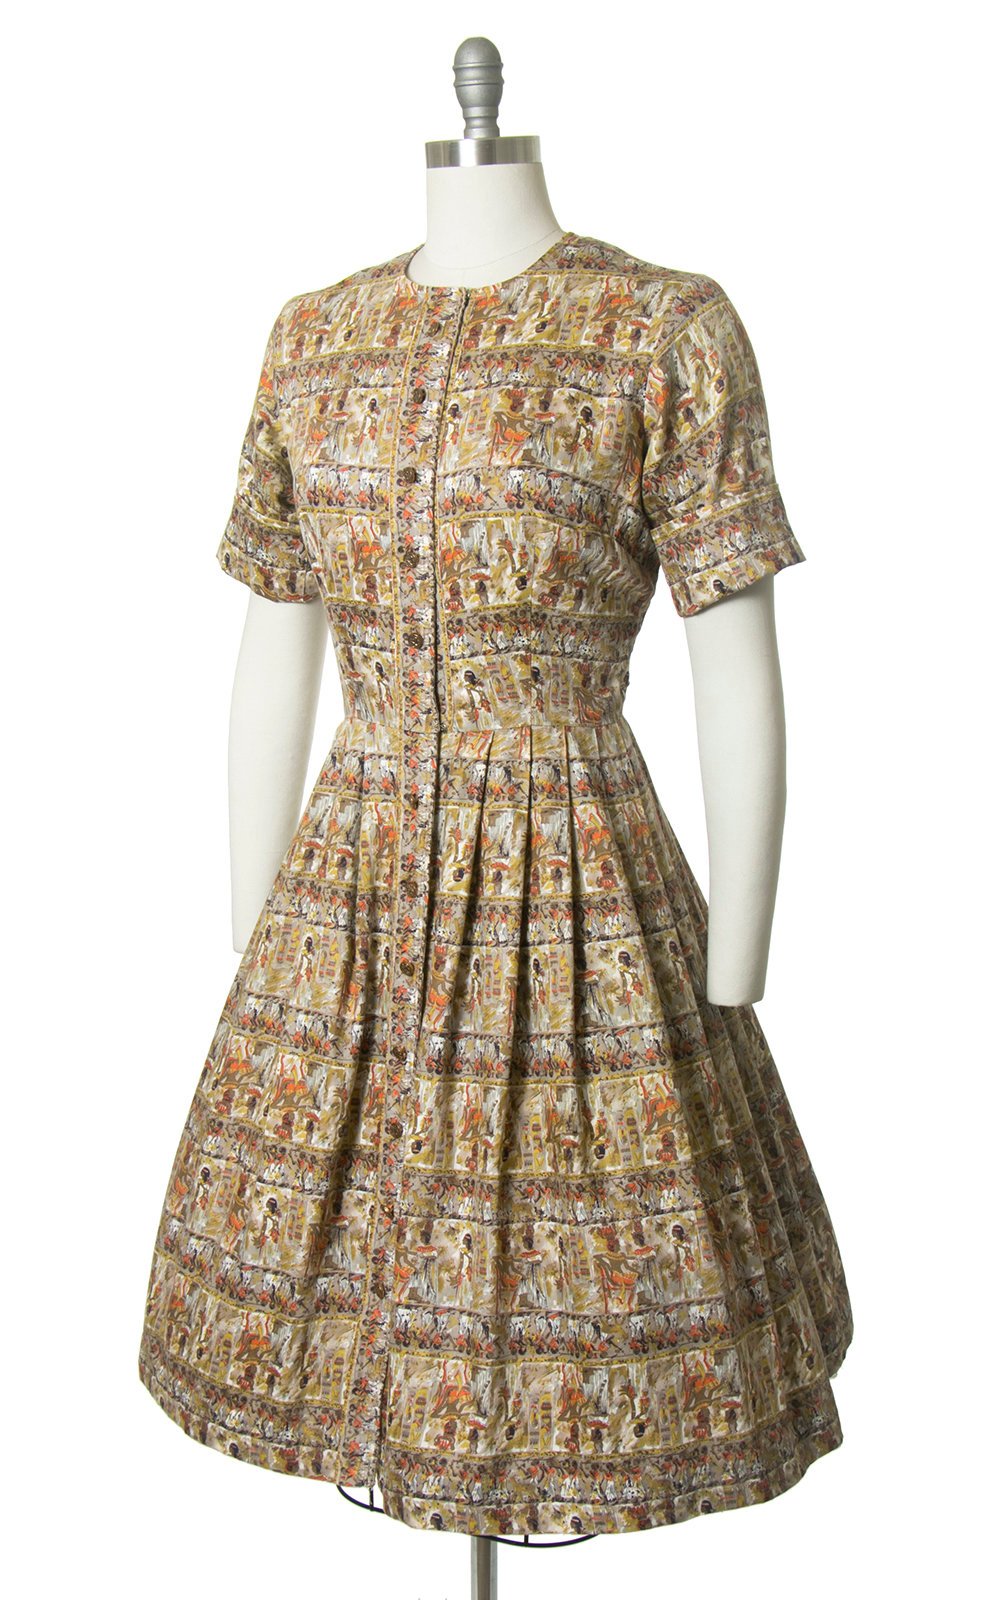 Vintage 1950s Dress | 50s Egyptian Novelty Print Cotton Shirt Dress Full Skirt Shirtwaist Day Dress (medium)